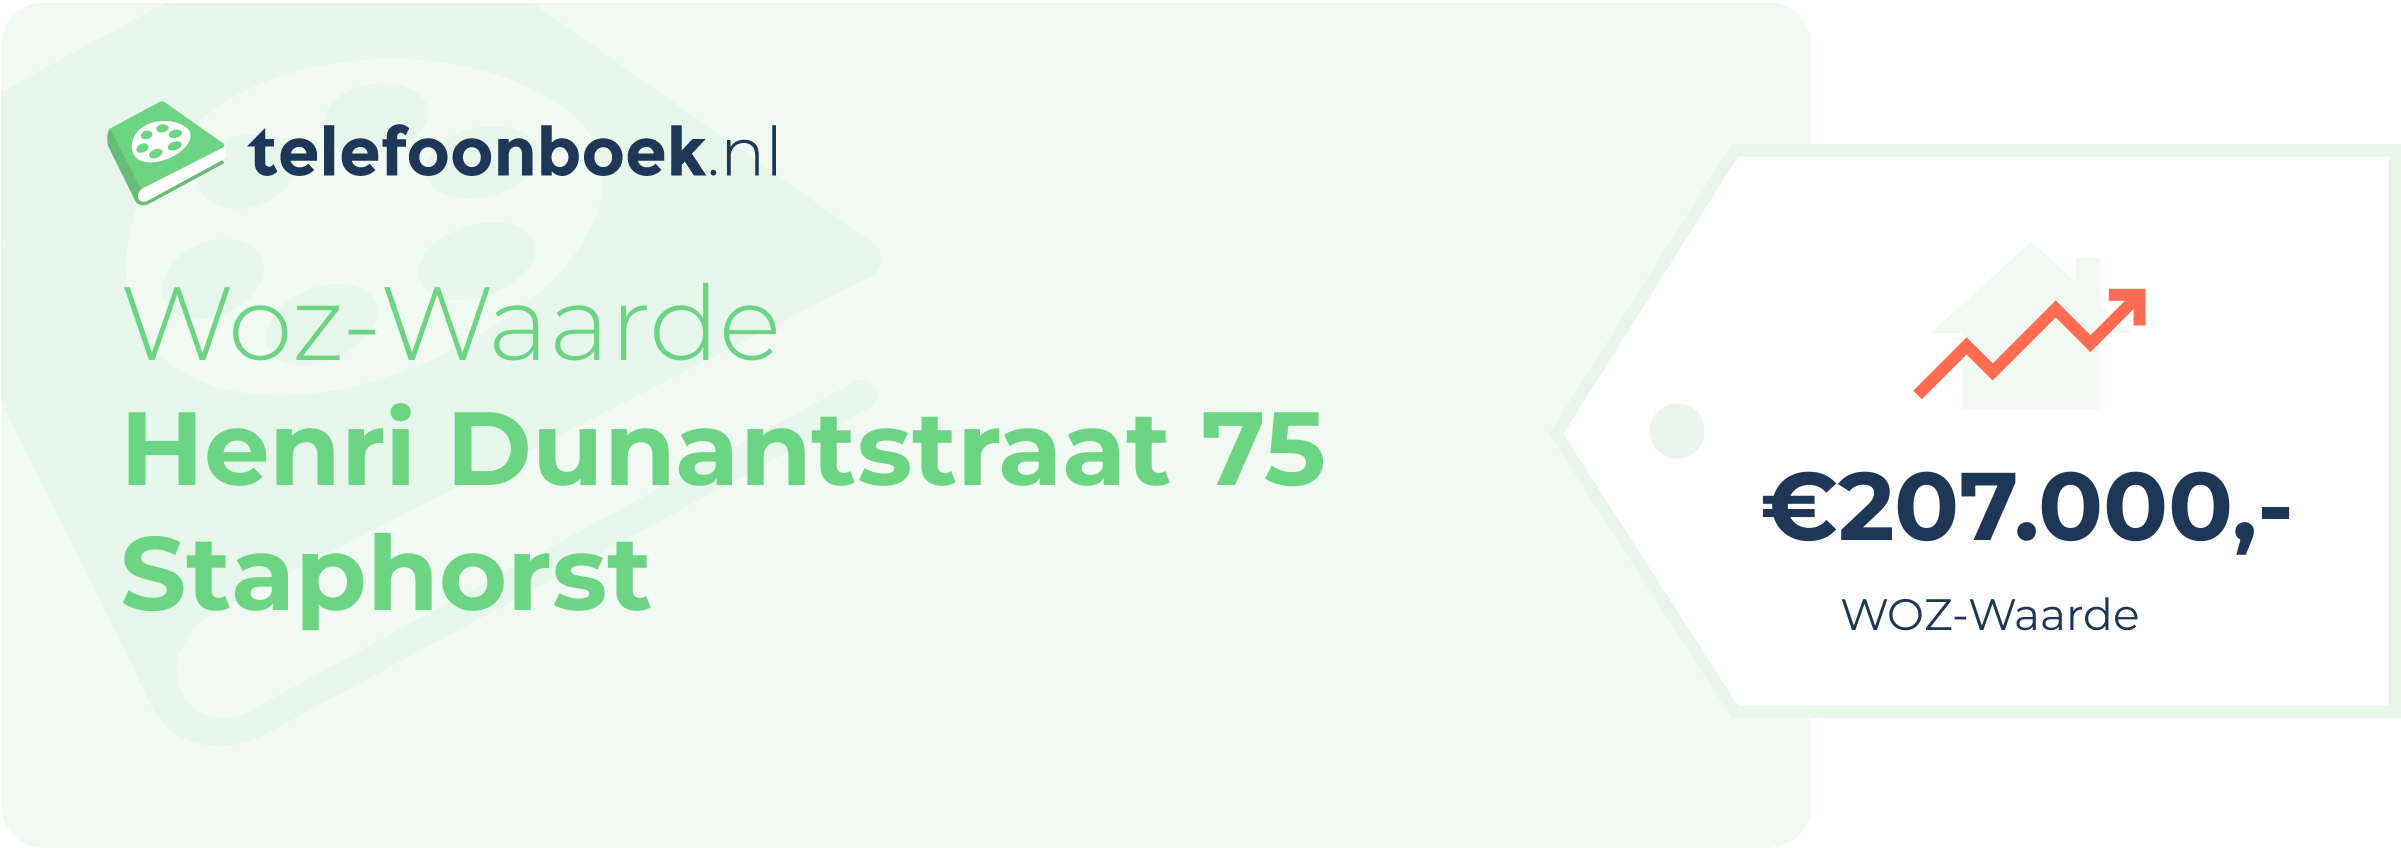 WOZ-waarde Henri Dunantstraat 75 Staphorst